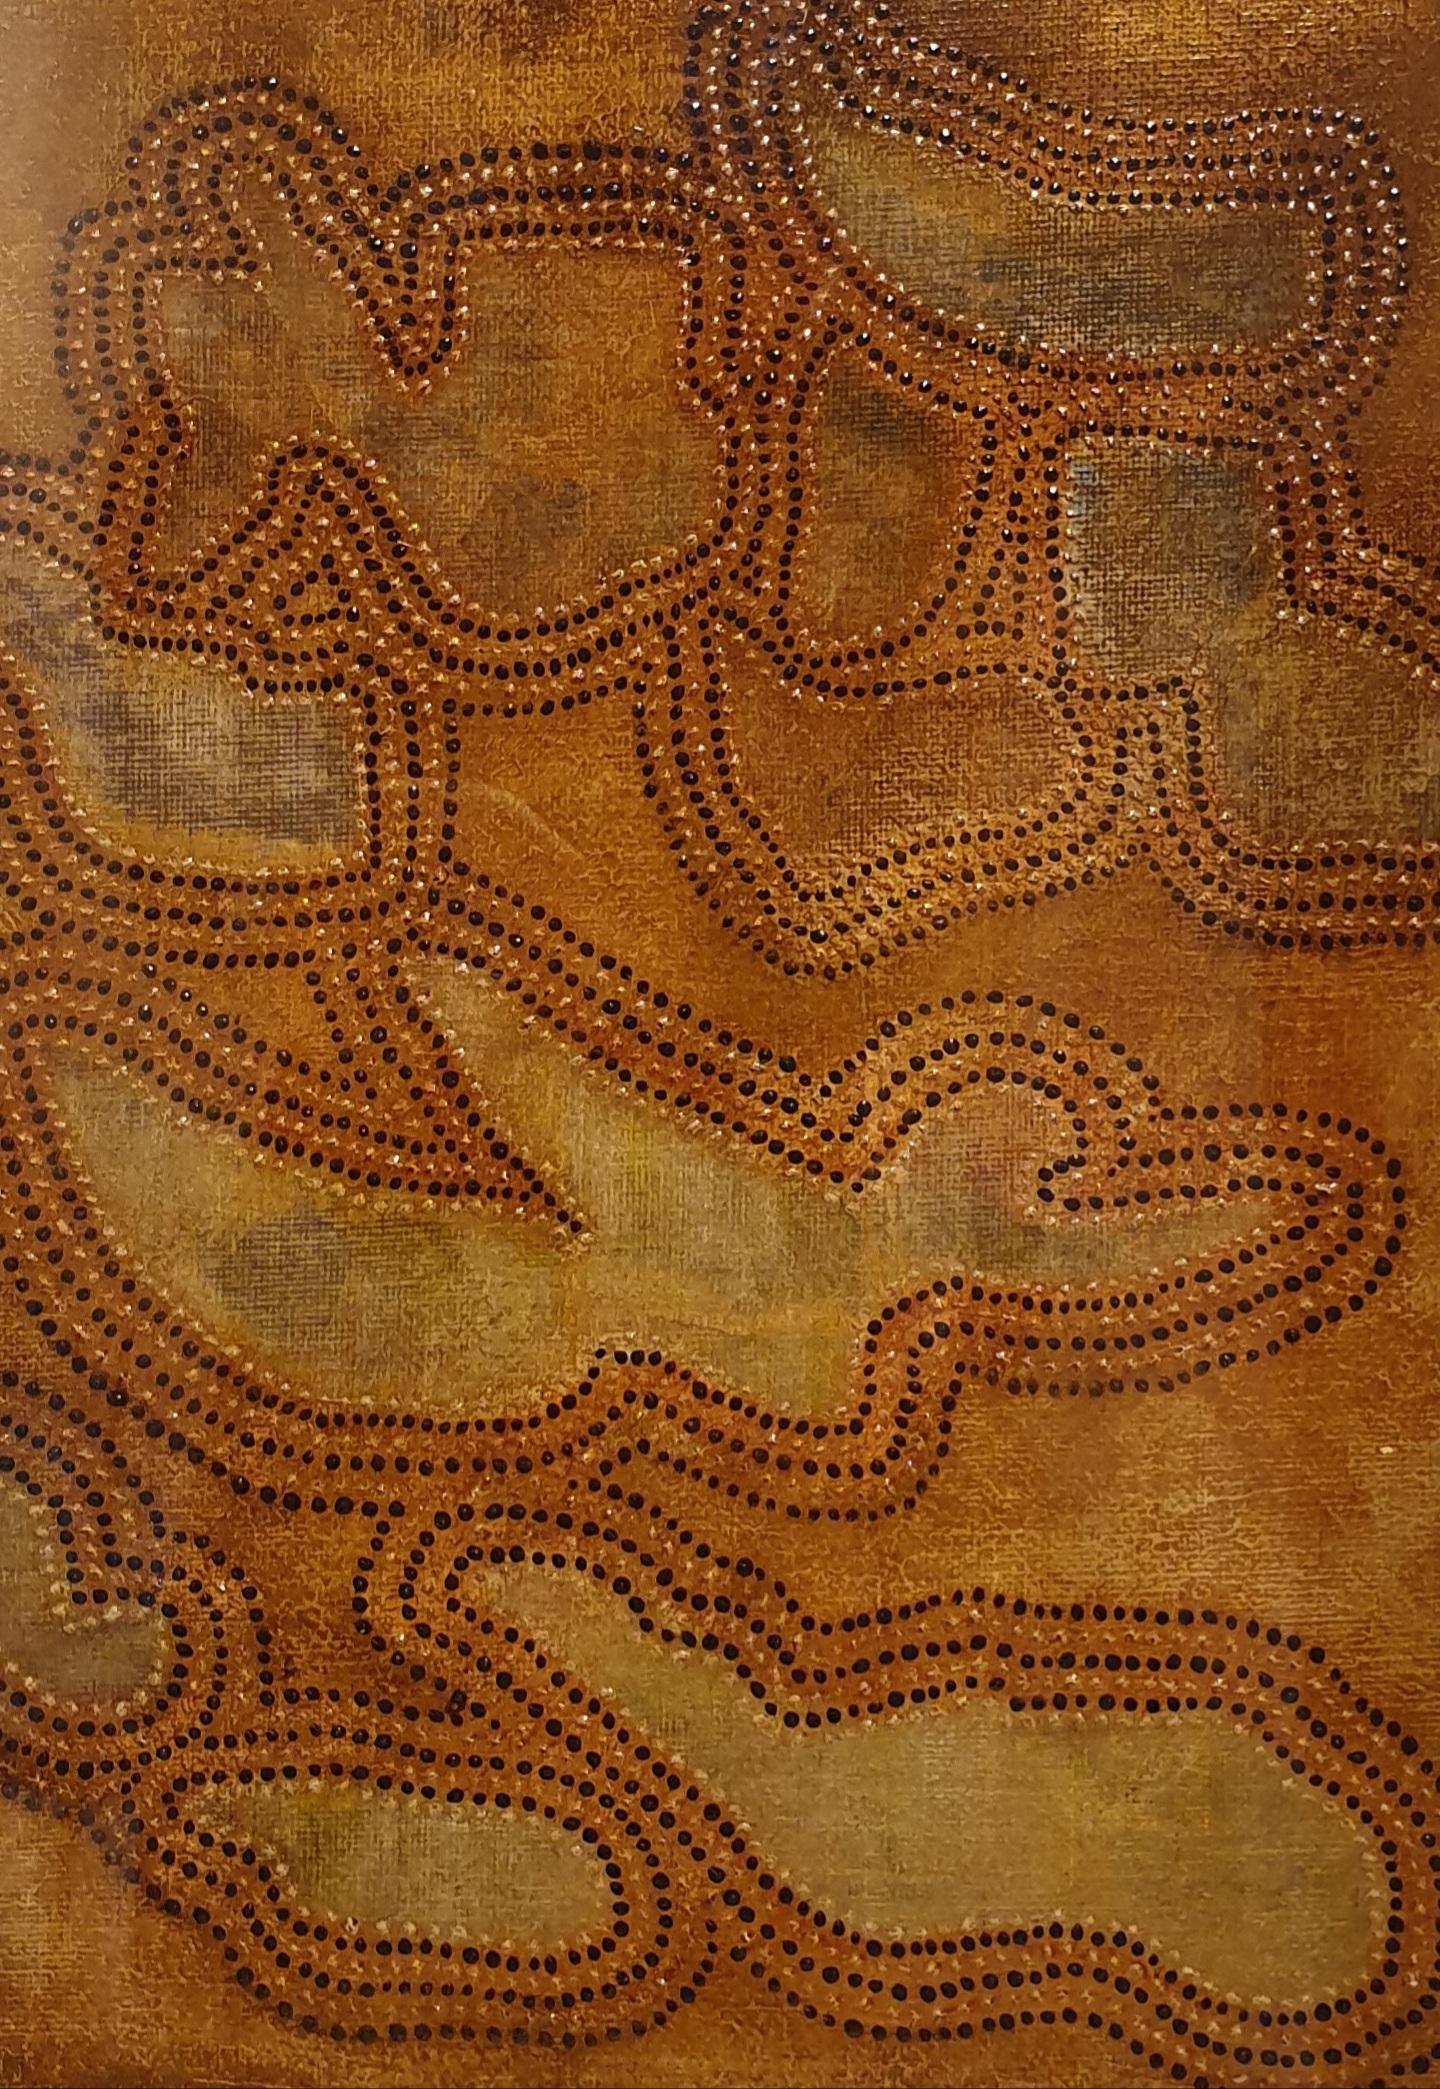 Abstrait contemporain d'inspiration aborigène. - Painting de Menno Modderman